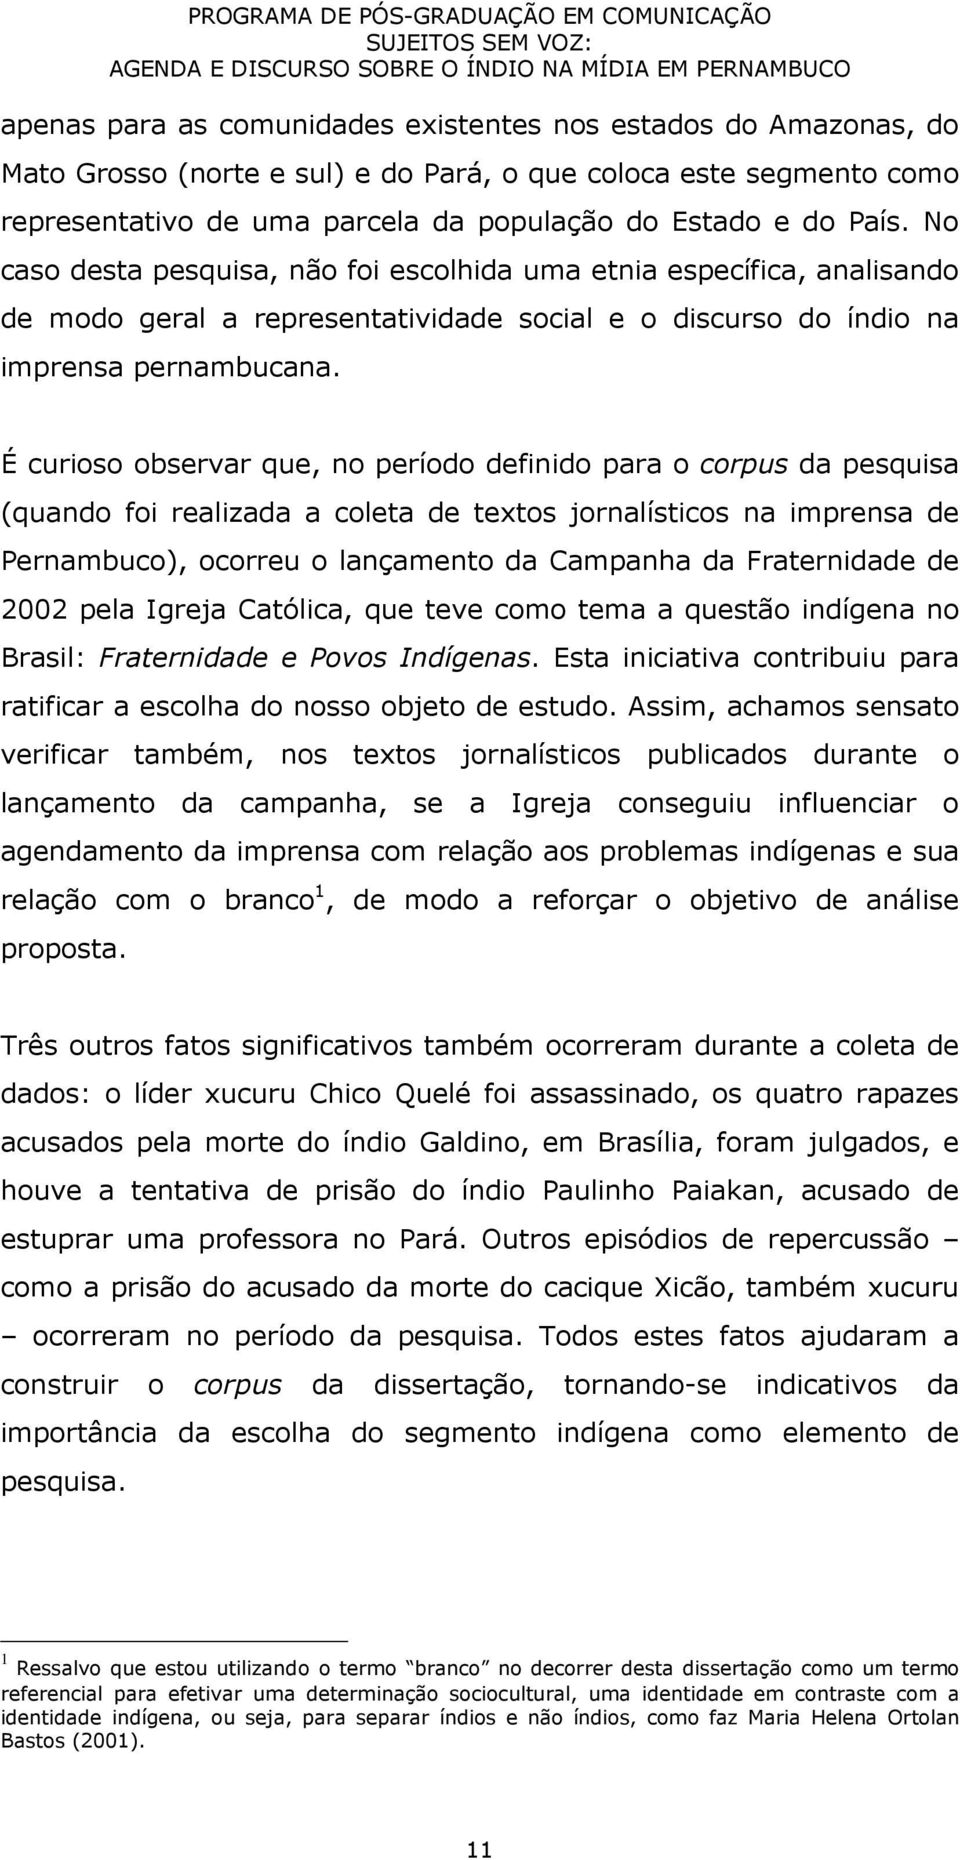 É curioso observar que, no período definido para o corpus da pesquisa (quando foi realizada a coleta de textos jornalísticos na imprensa de Pernambuco), ocorreu o lançamento da Campanha da